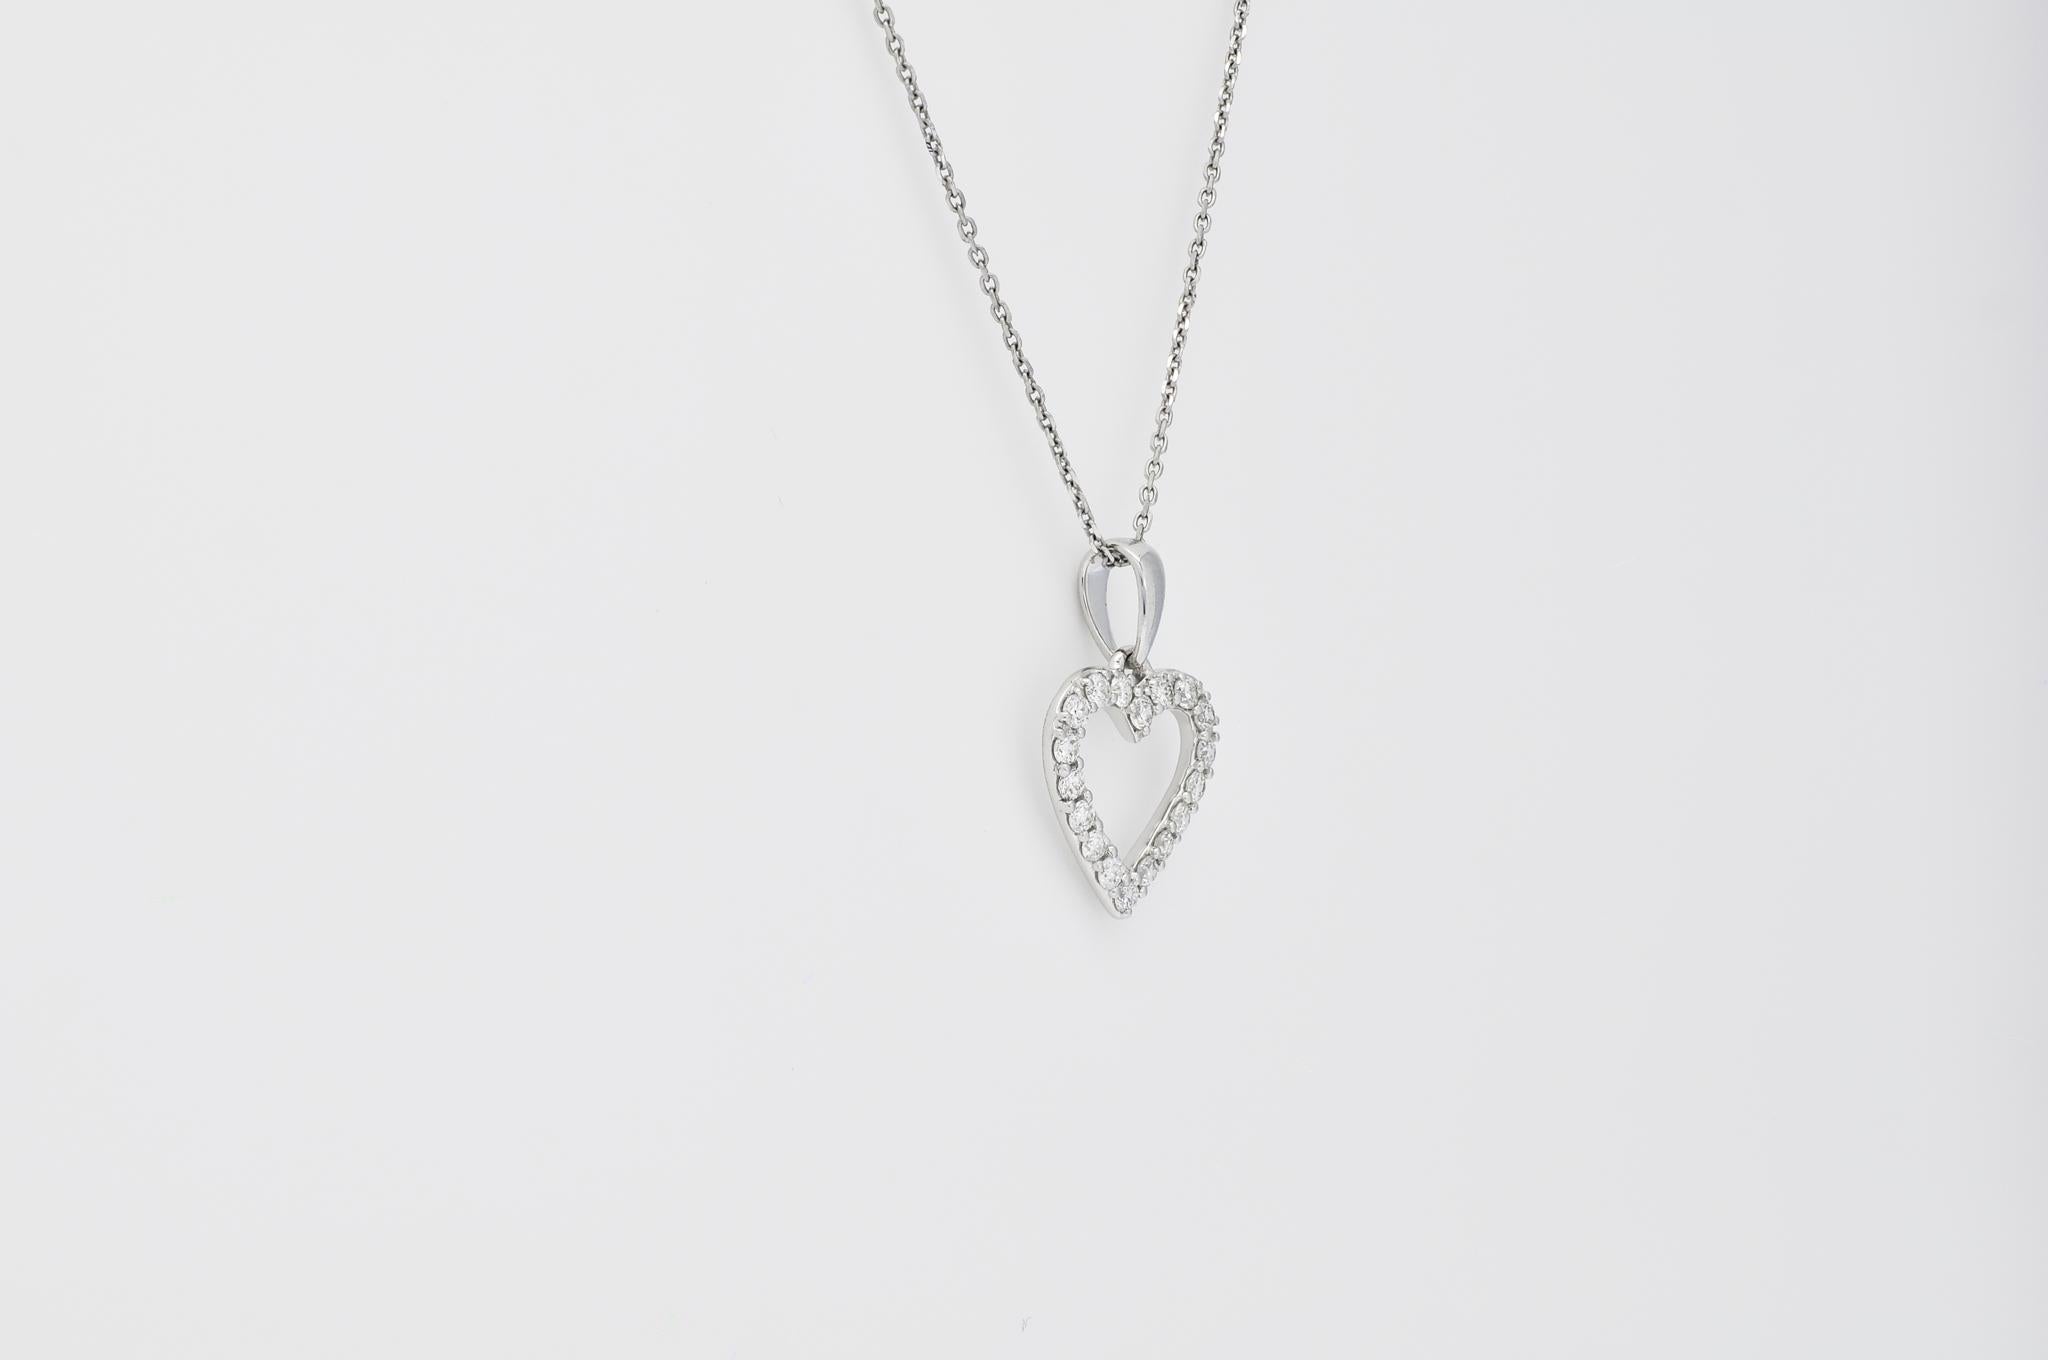 Wir stellen unsere exquisite große herzförmige Anhänger-Halskette vor, ein Symbol der Liebe und Hingabe, das die Herzen erobert. Diese atemberaubende Halskette besteht aus einem zierlichen, herzförmigen Anhänger, der sorgfältig aus schimmerndem